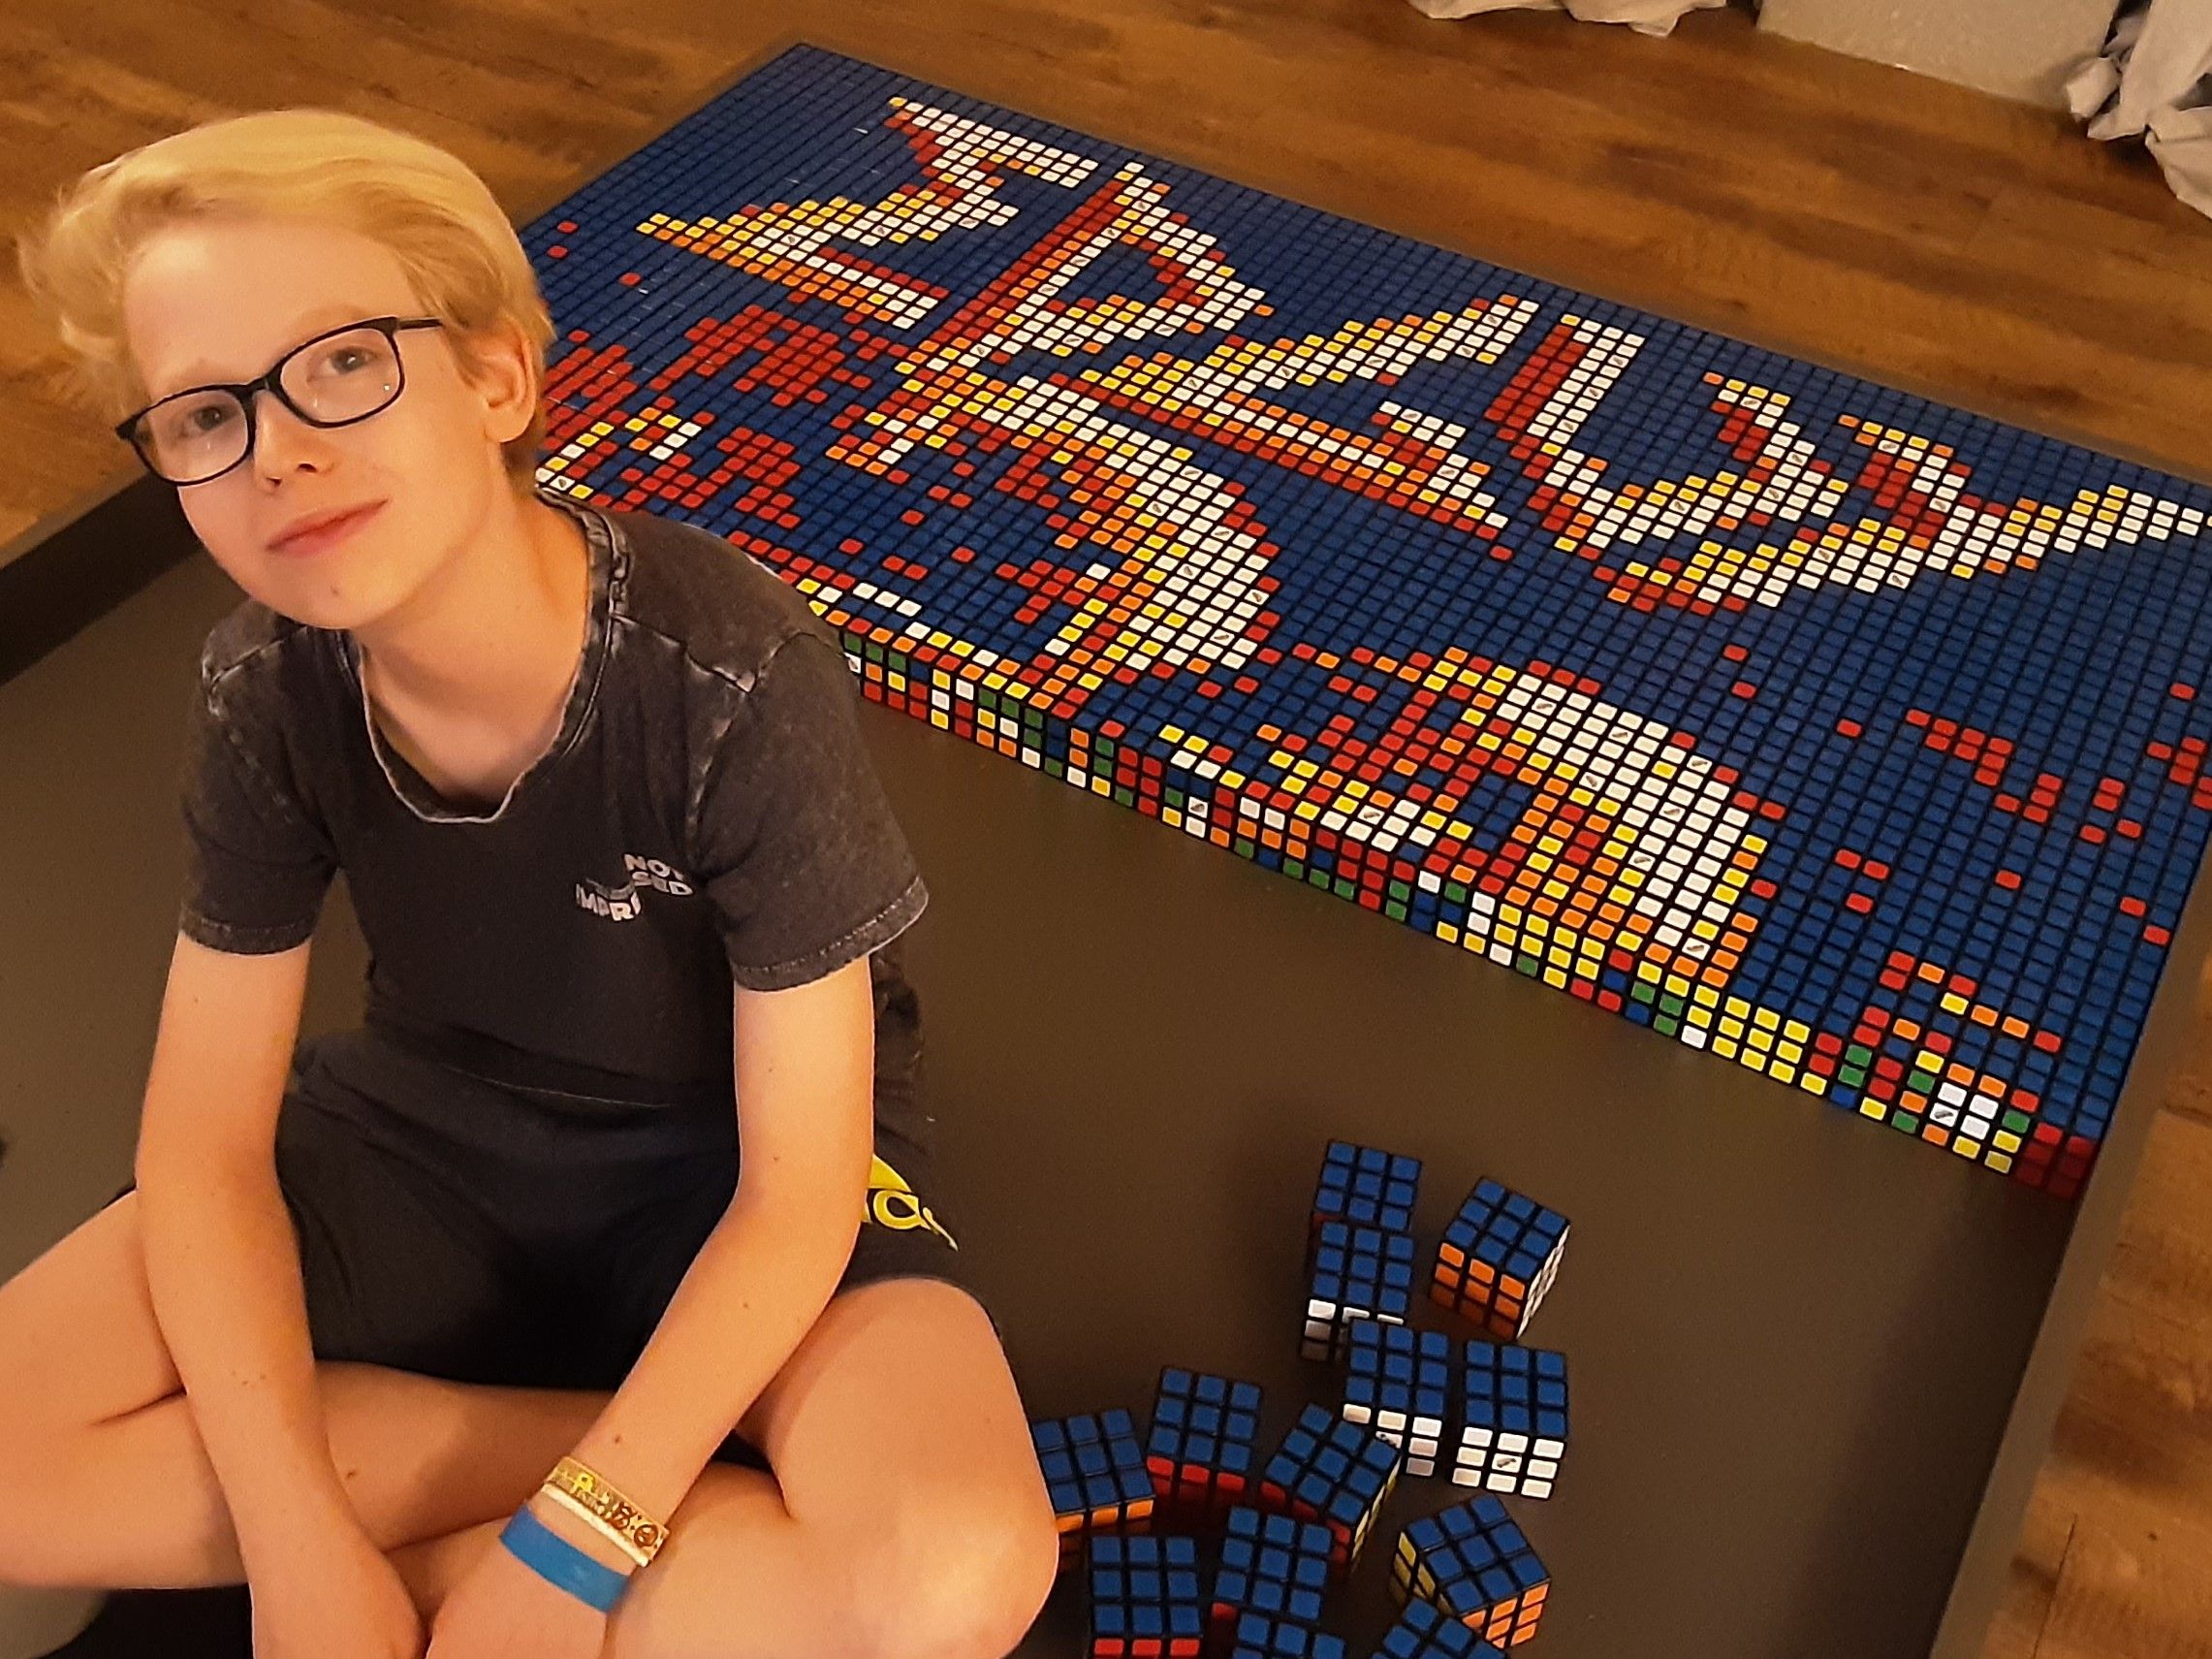 Julian Exxel gestaltet "Age Of The Joker"-Artwork aus Rubik's Cubes für Ukraine-Hilfe